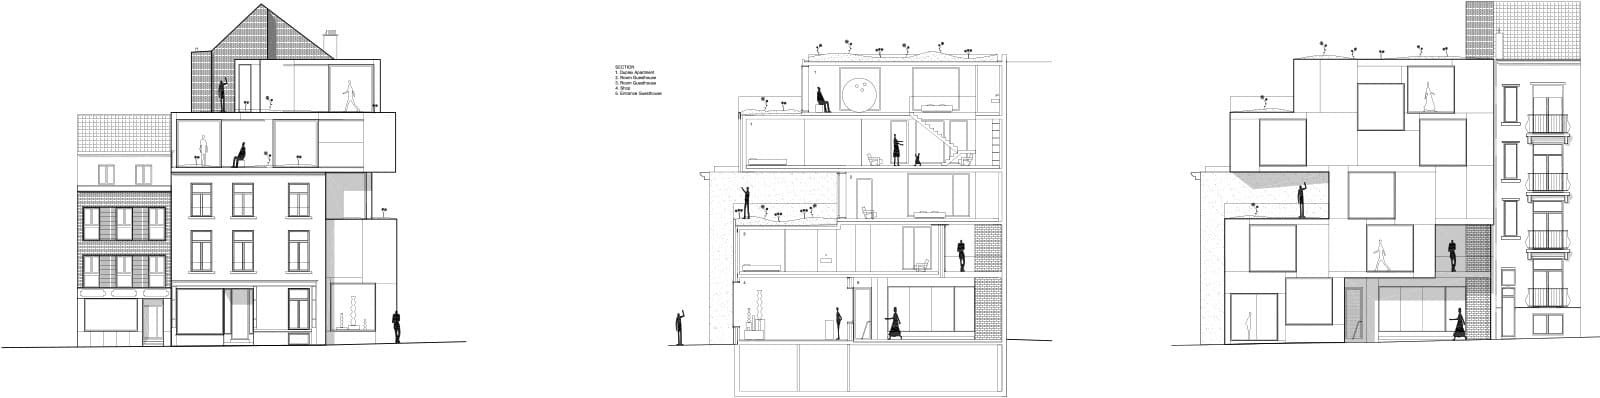 low-architecten-stijn-bollaert-tim-van-de-velde-little-willy-12